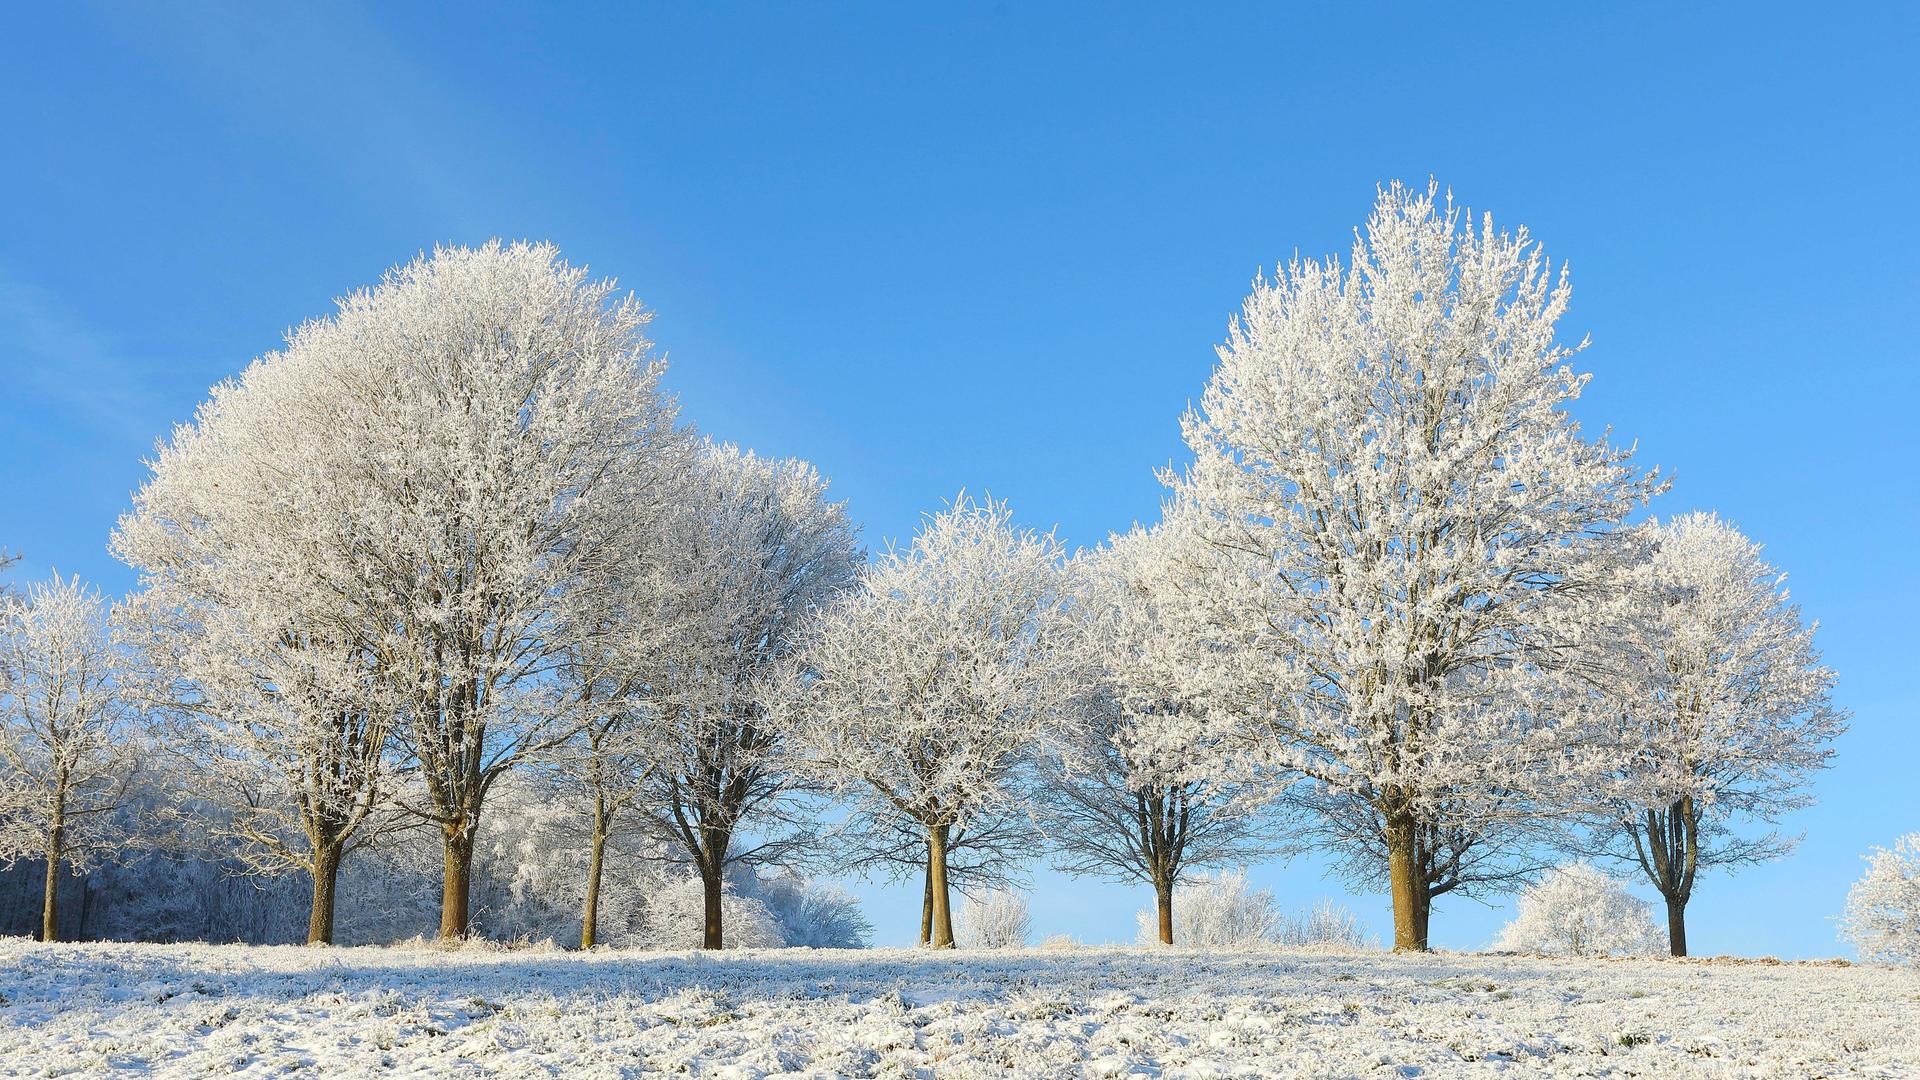 Mit Raureif überzogene Laubbäume stehen in einer Winterlandschaft.